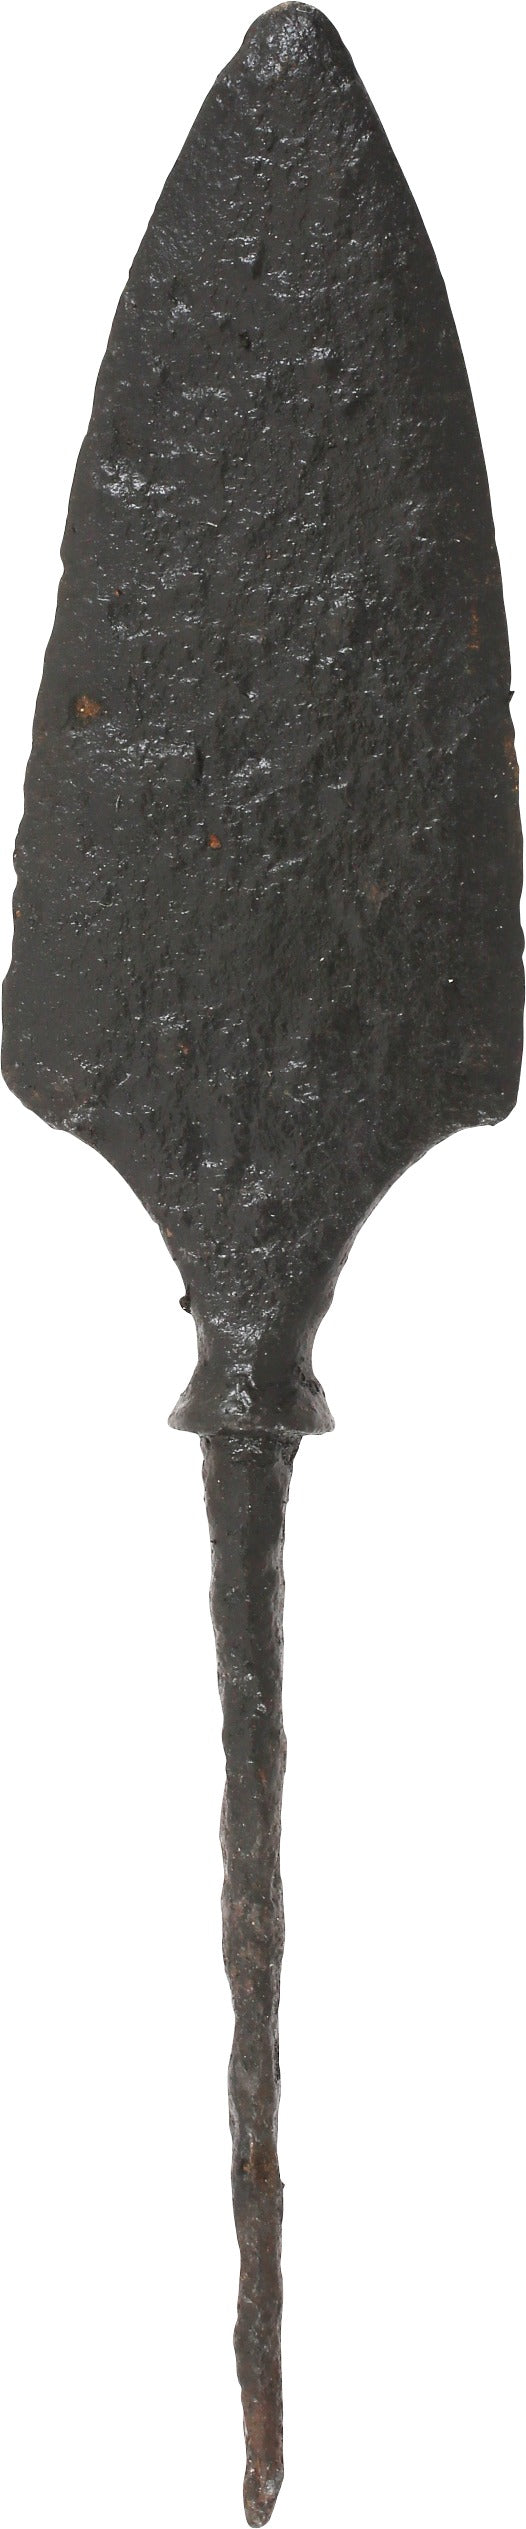 FINE VIKING TANGED ARROWHEAD C.9th-10th CENTURY - Fagan Arms